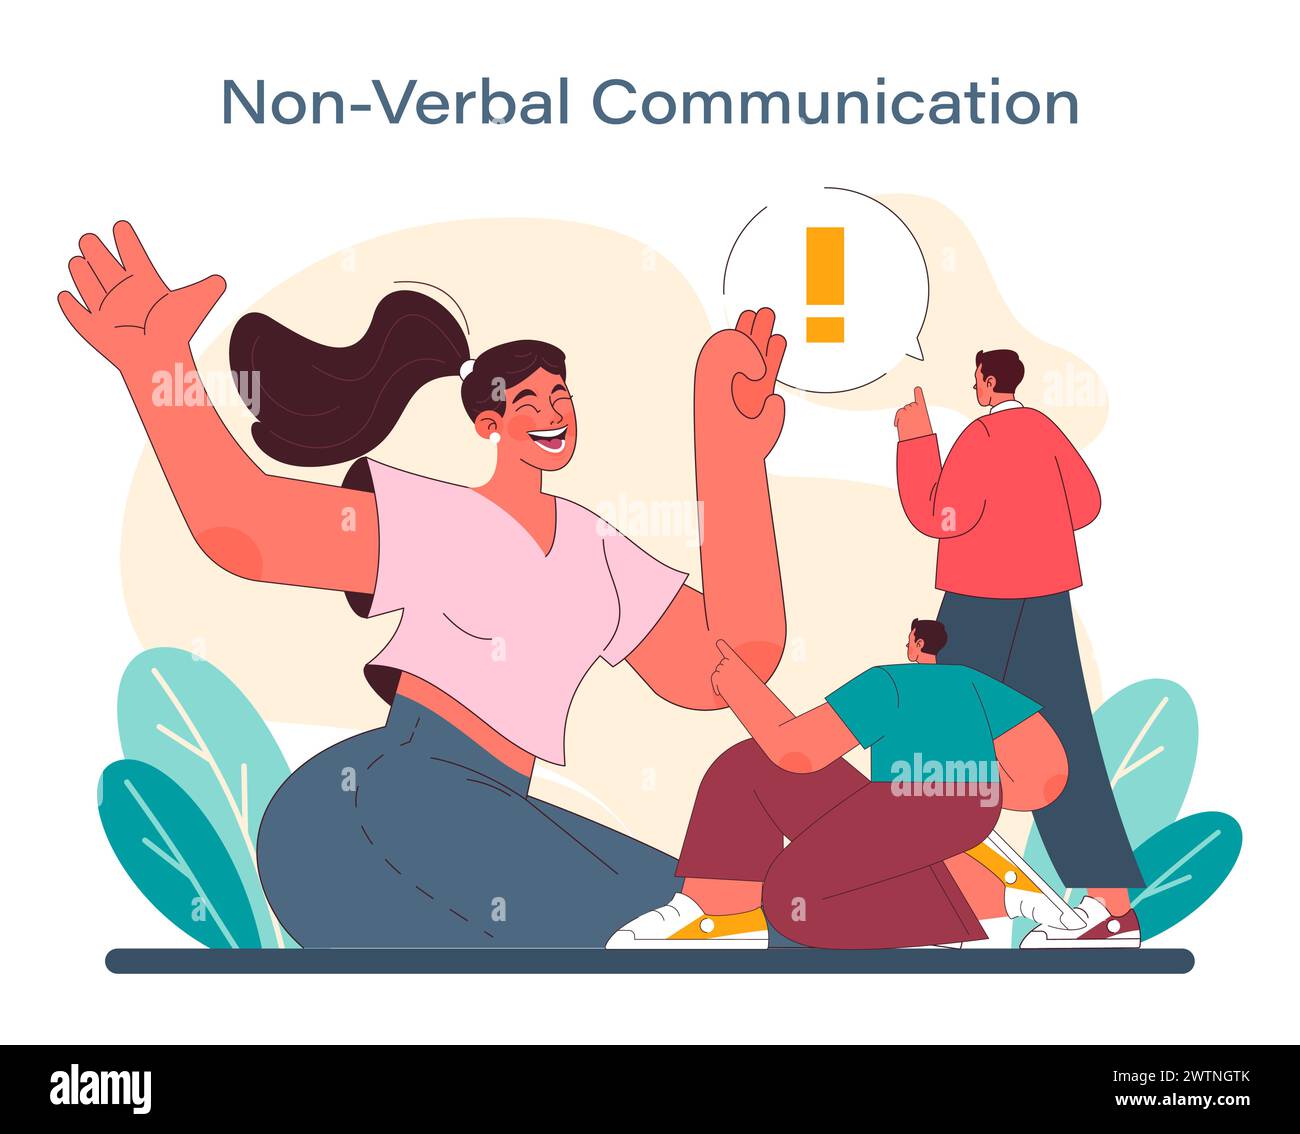 Nonverbales Kommunikationskonzept. Illustration einer freudigen Interaktion, in der Körpersprache Bände spricht und den unausgesprochenen, aber kraftvollen Dialog hervorhebt. Vektorabbildung. Stock Vektor